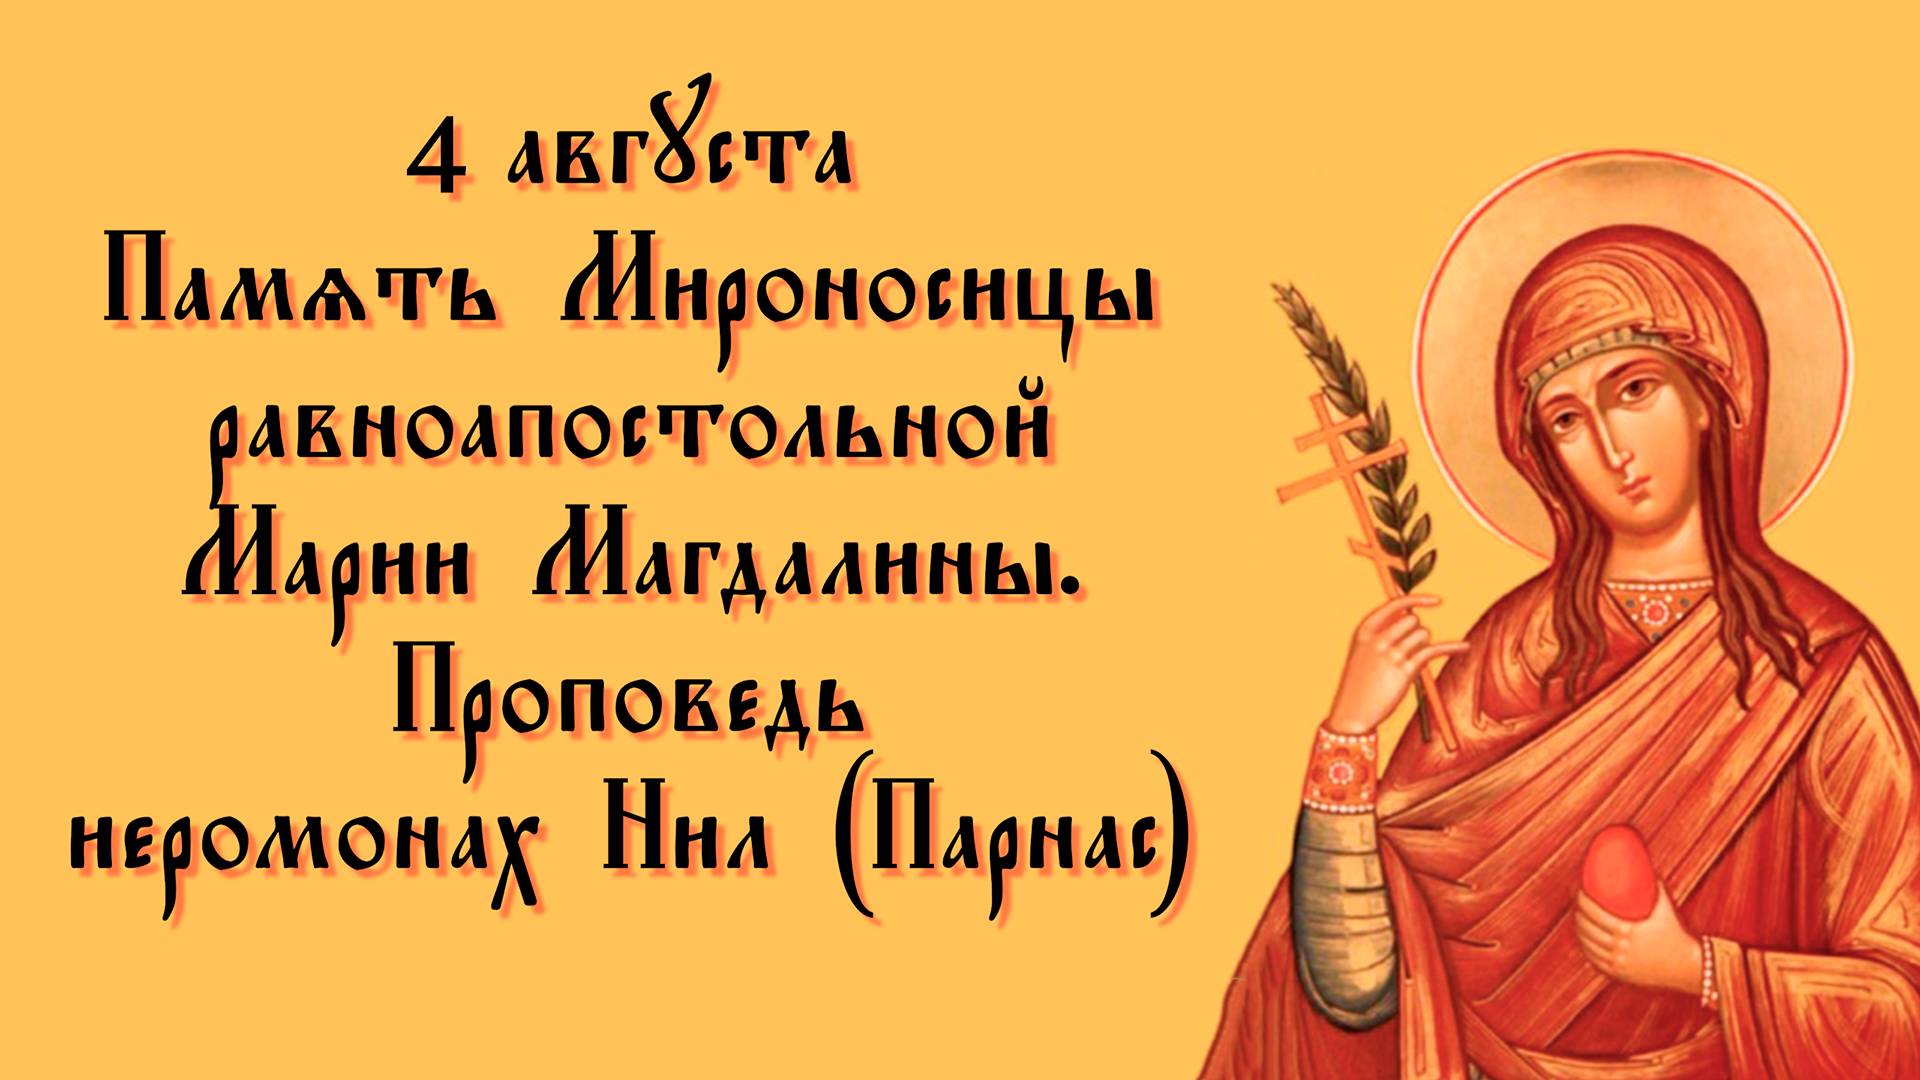 4 августа память Марии Магдалине - проповедь иеромонах Нил